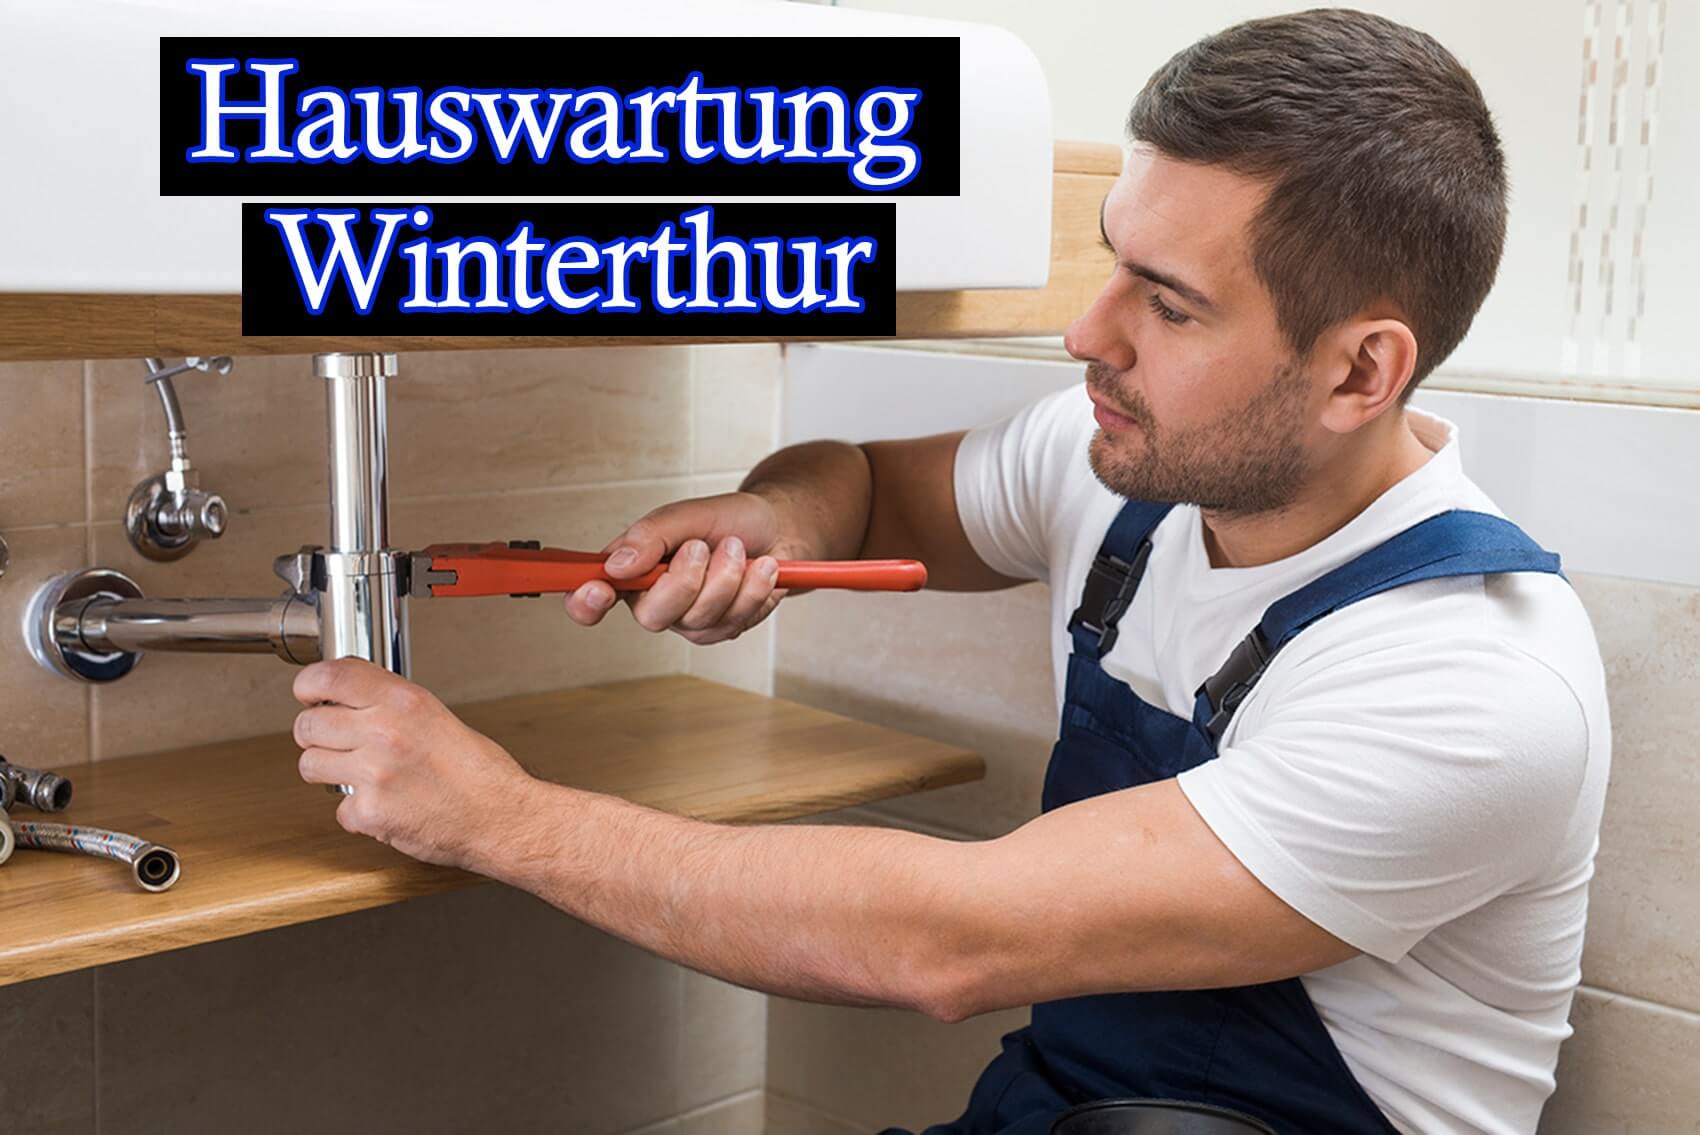 Hauswartung Winterthur- Hauswartungen in Winterthur